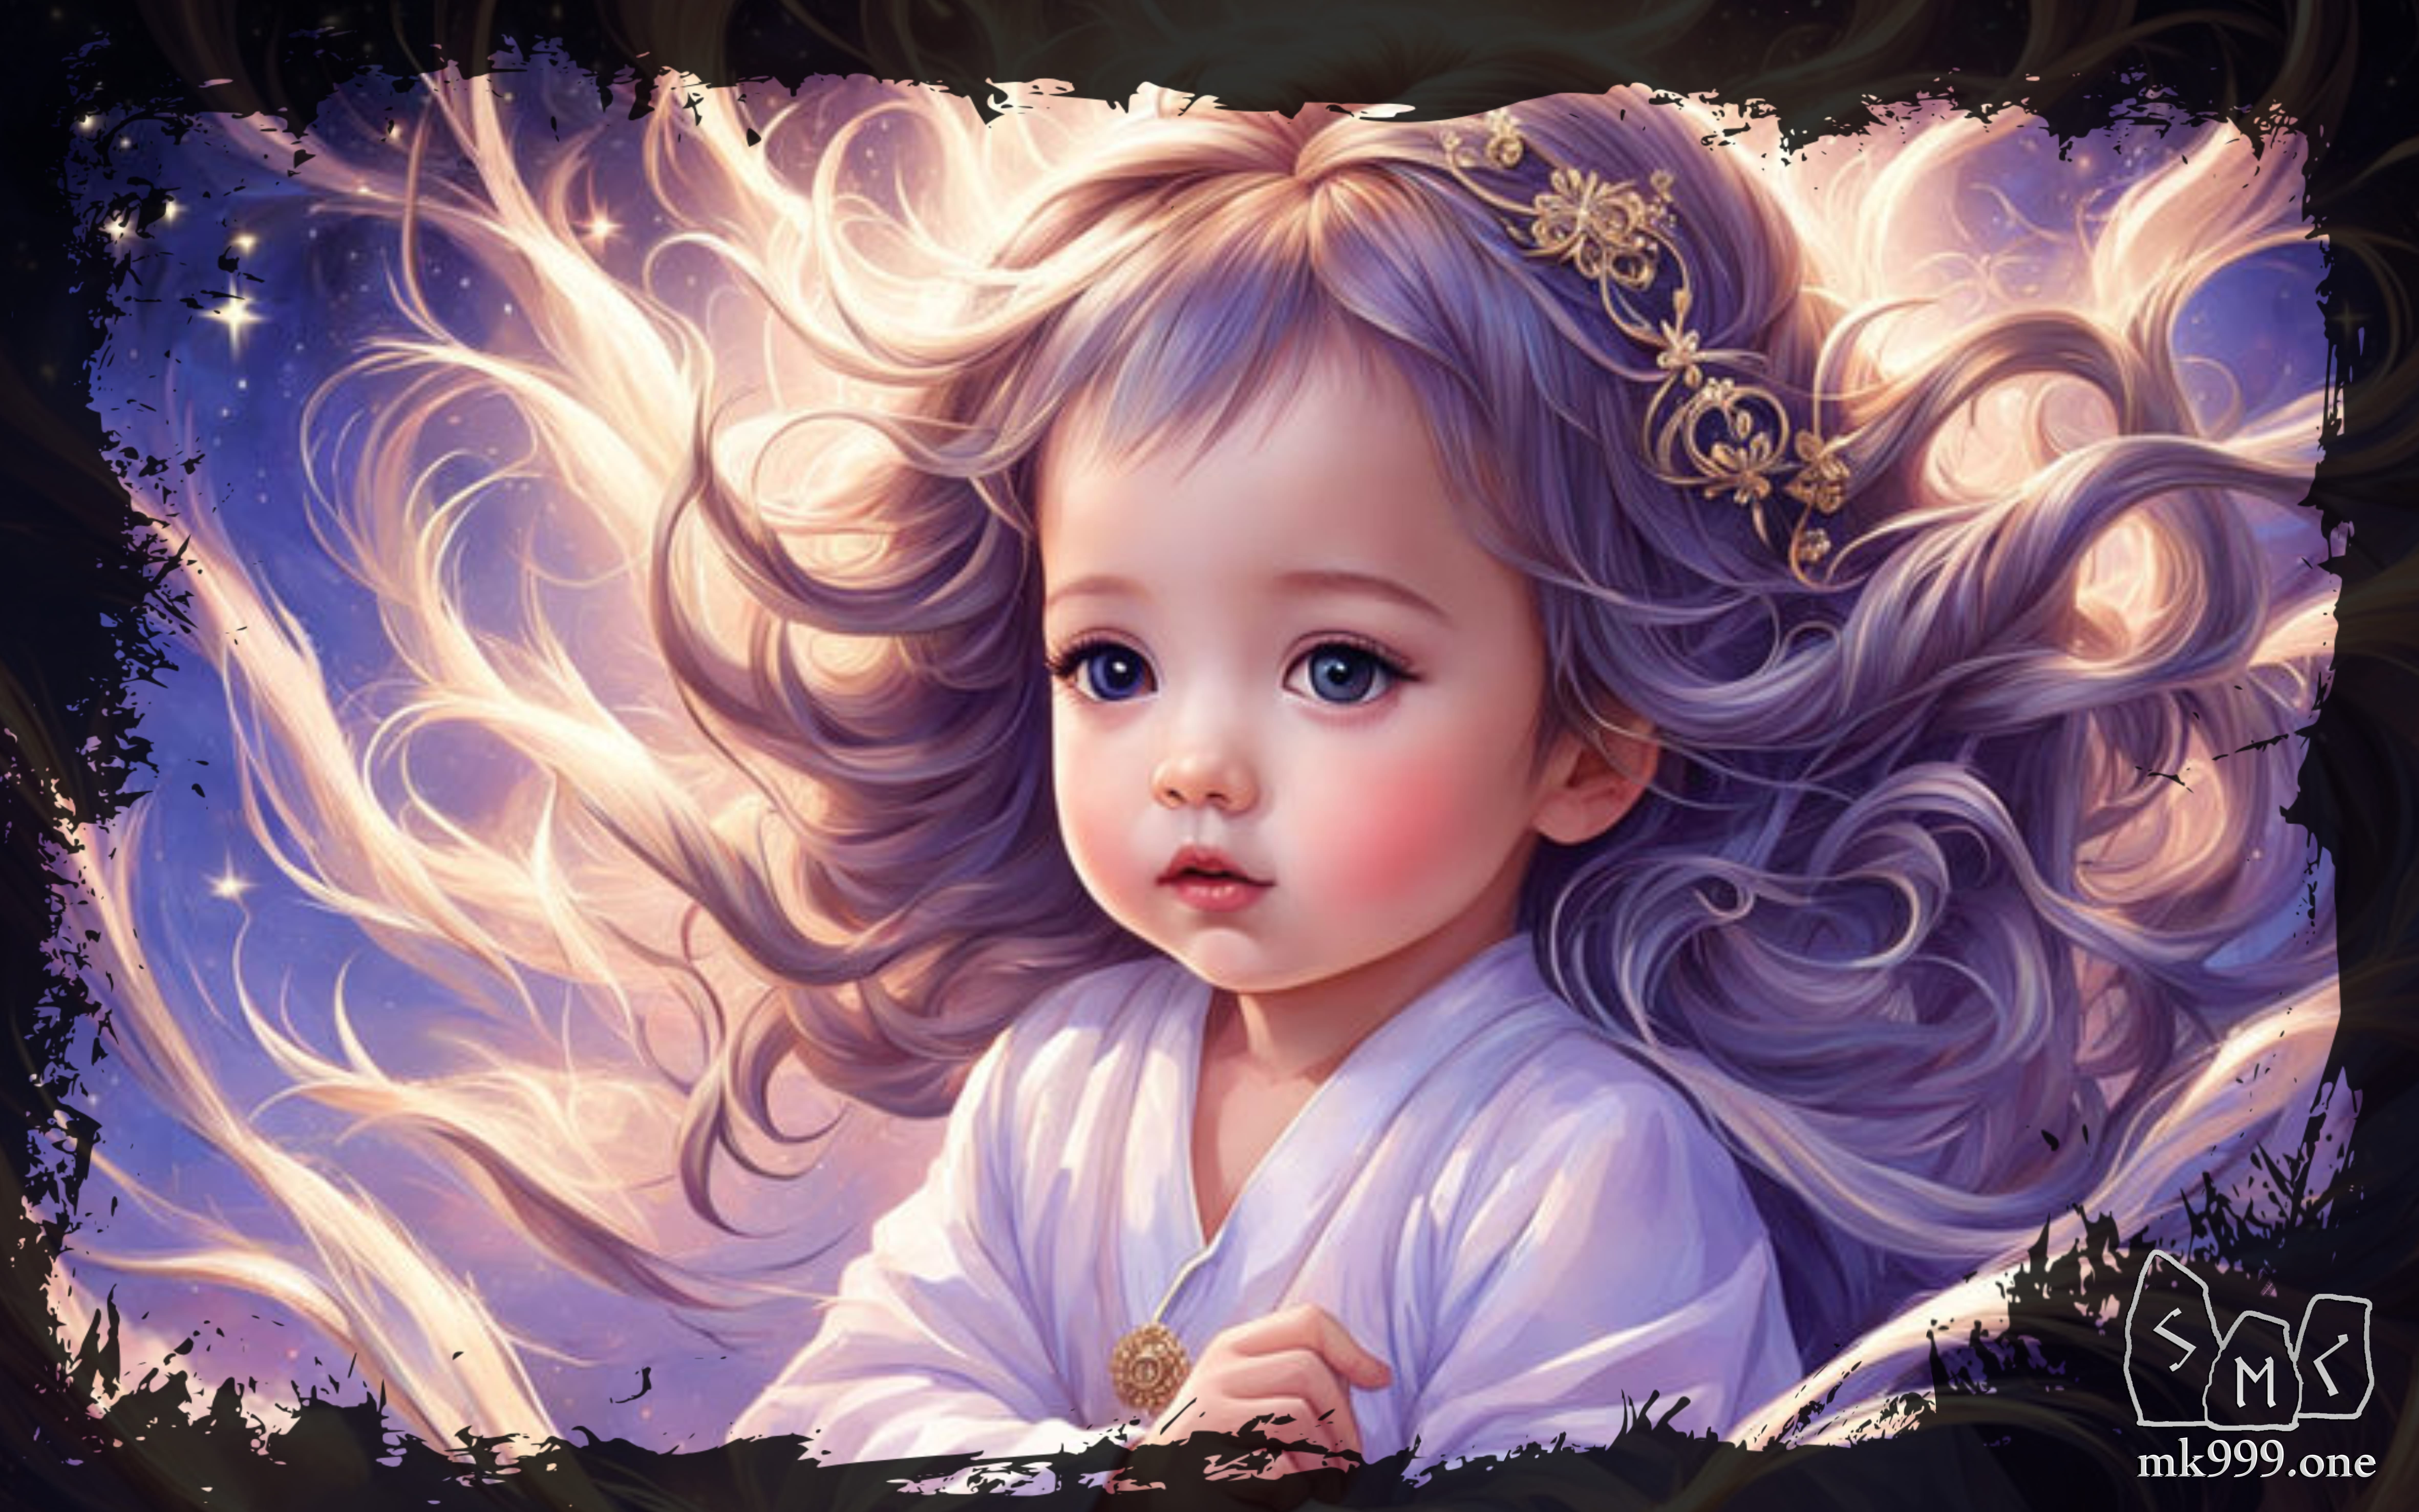 Волосы младенцев, годовалого ребёнка используют в магических ритуалах как магический приём, как сохранение, фиксация в определённой точке